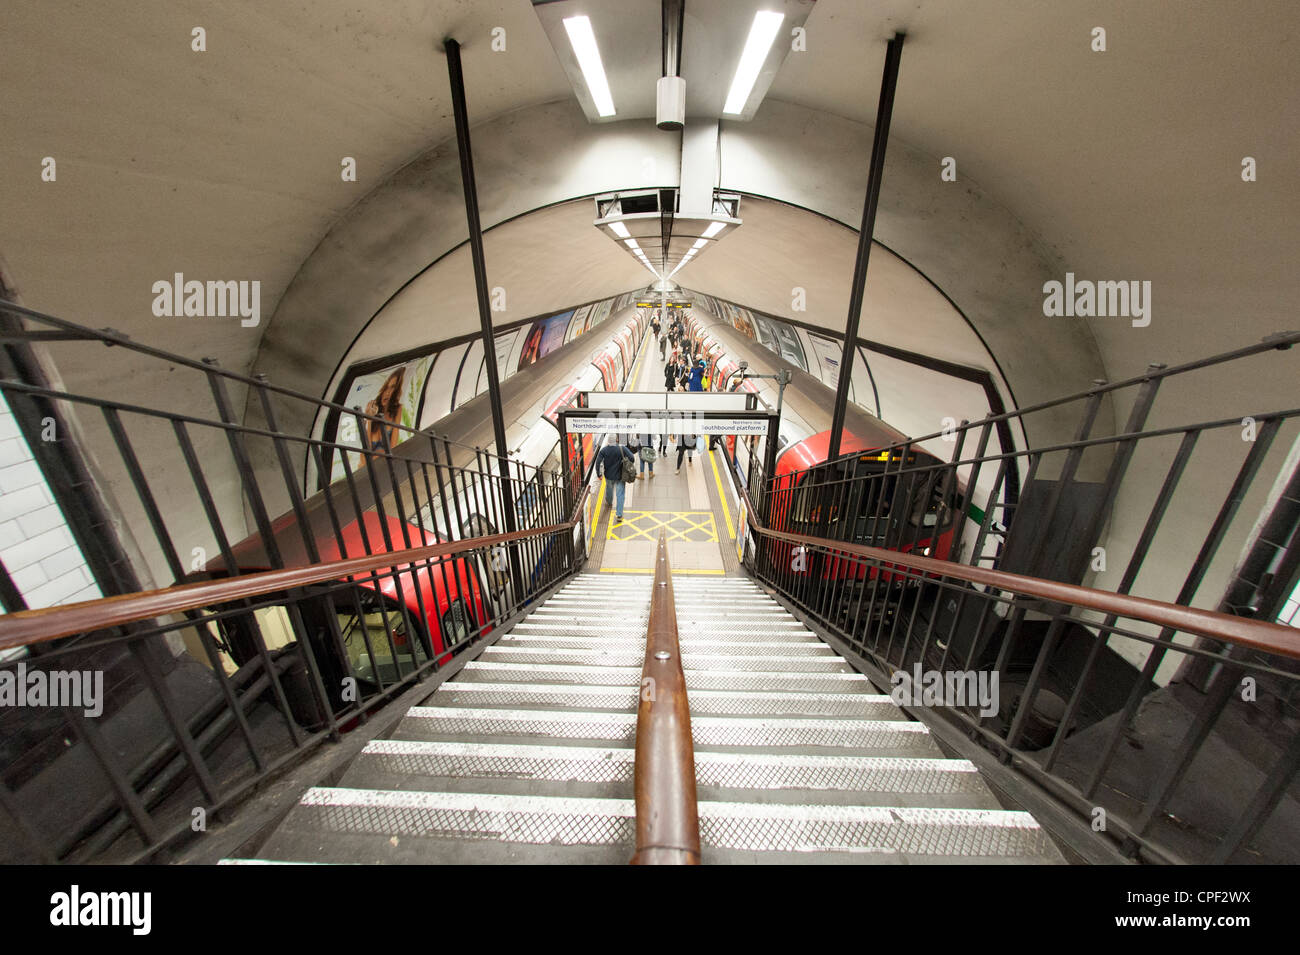 La station de métro Clapham Common, London, England, UK Banque D'Images